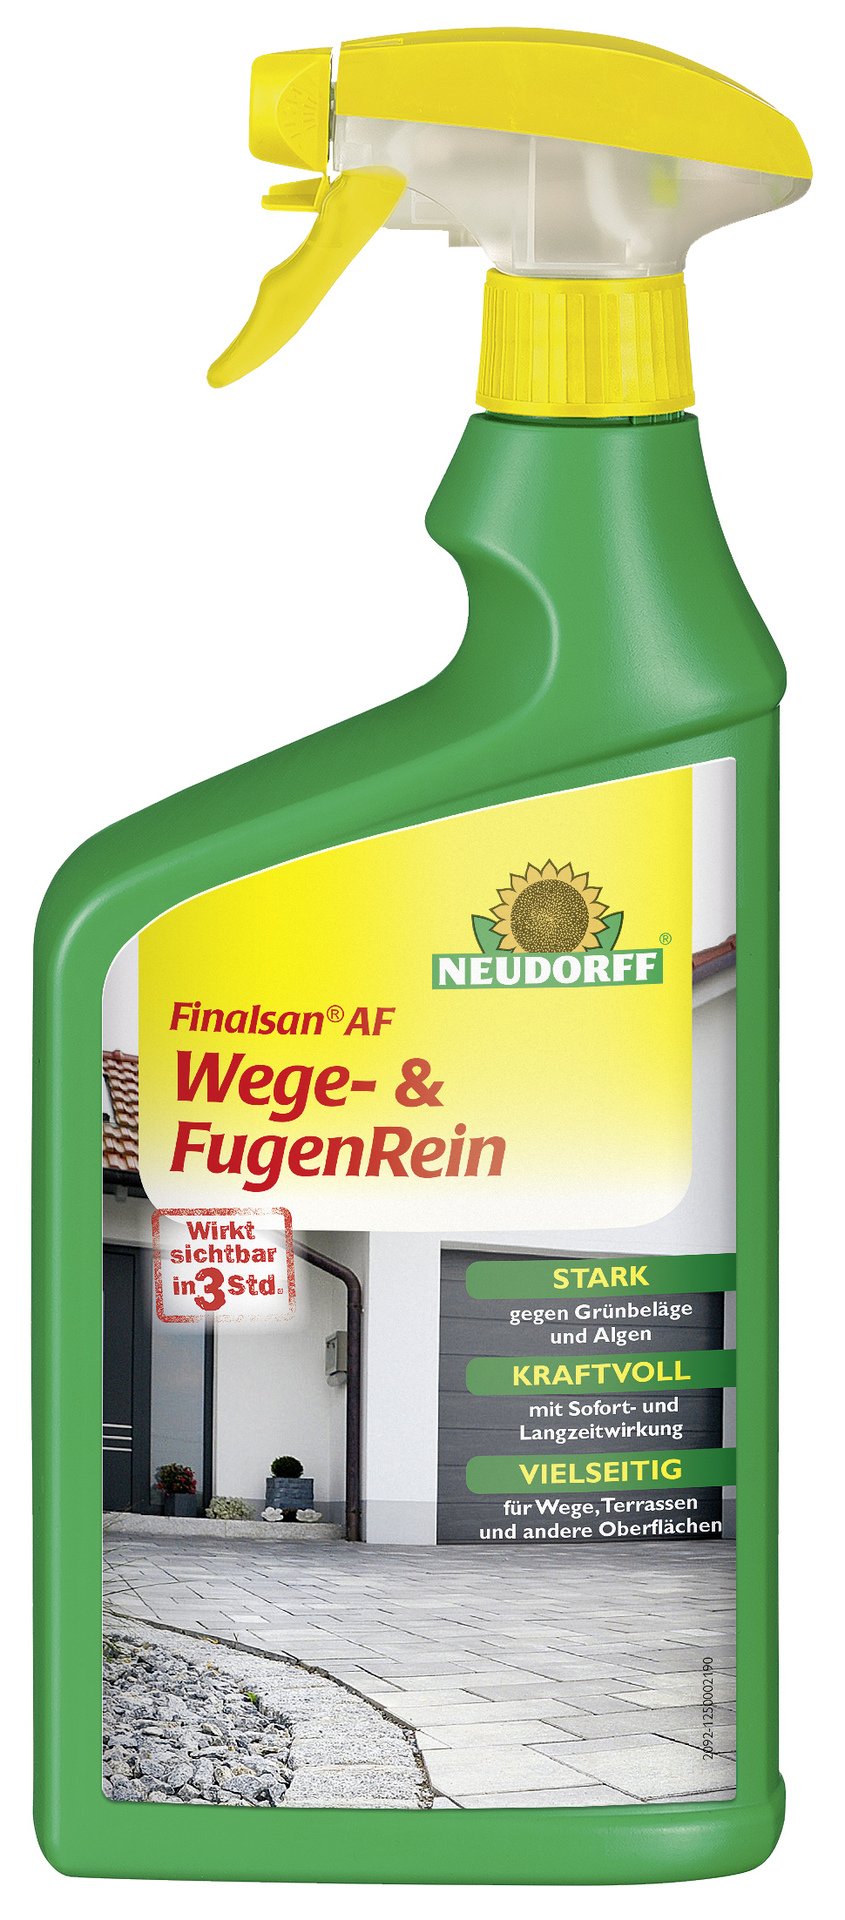 W. Neudorff GmbH KG Finalsan AF Wege- und Fugenrein 1 l